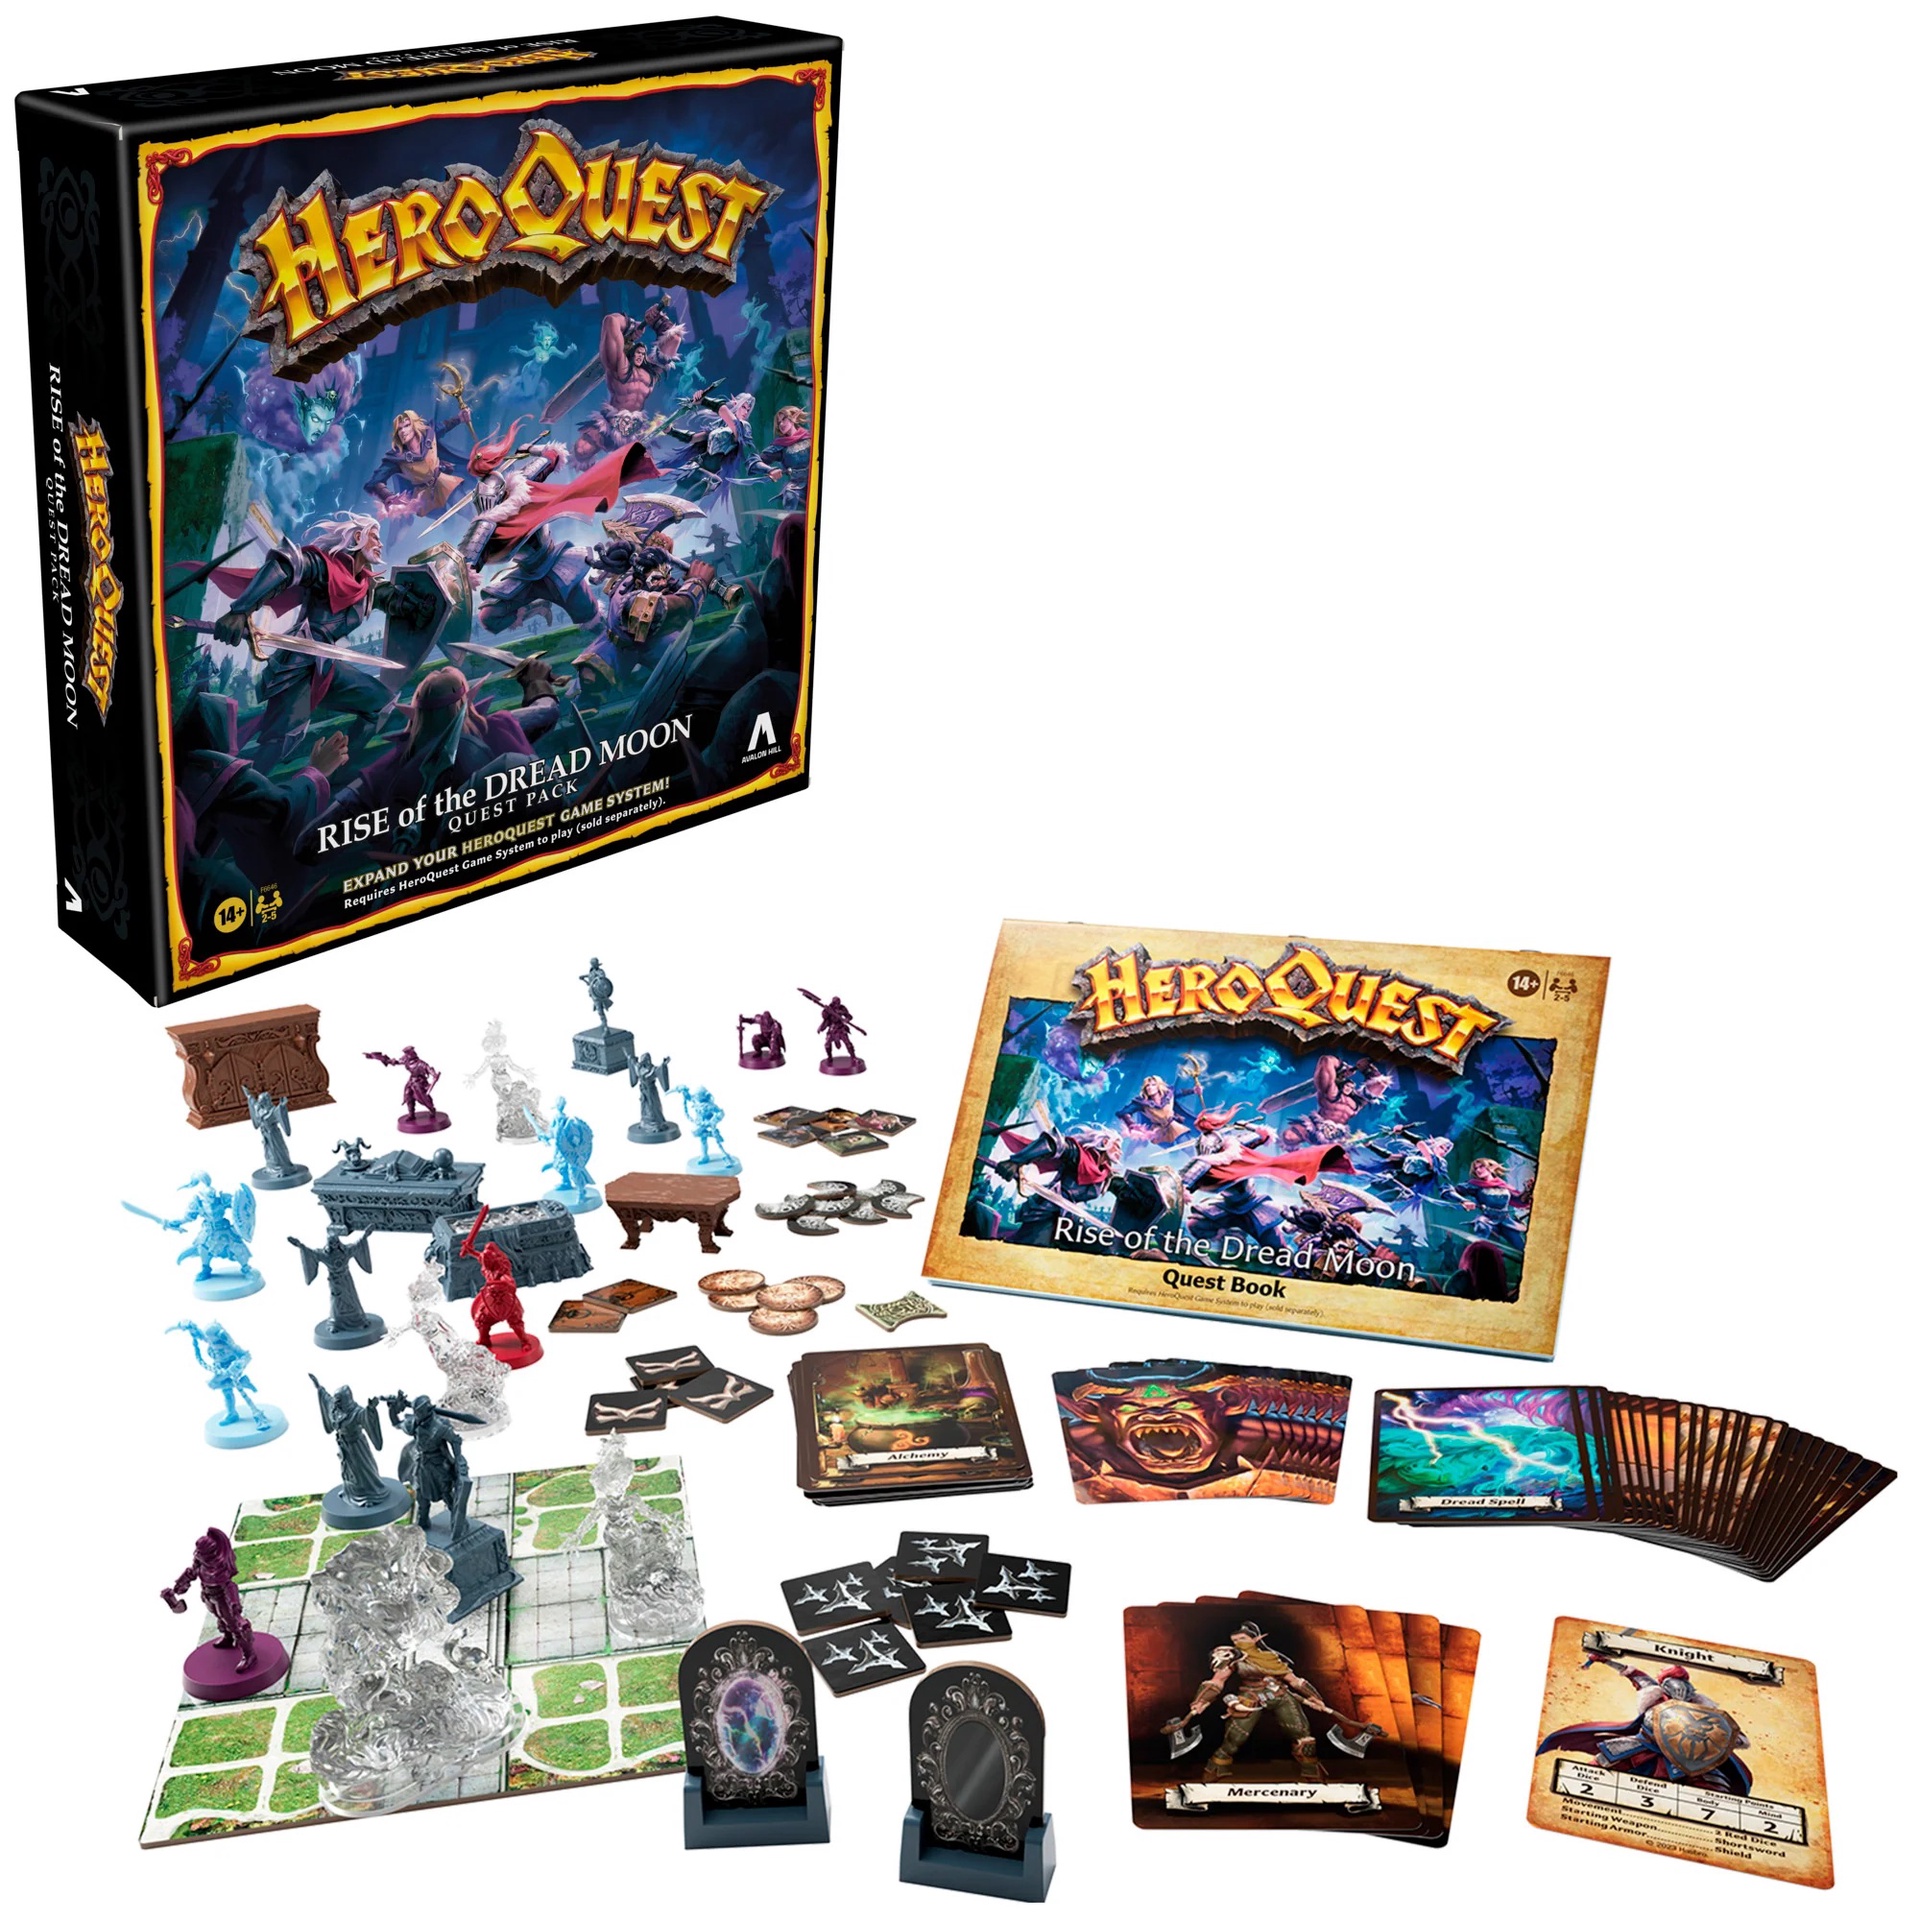 Wonderland's War Deluxe Edition plus Premium Chips Kickstarter Board Game -  The Game Steward